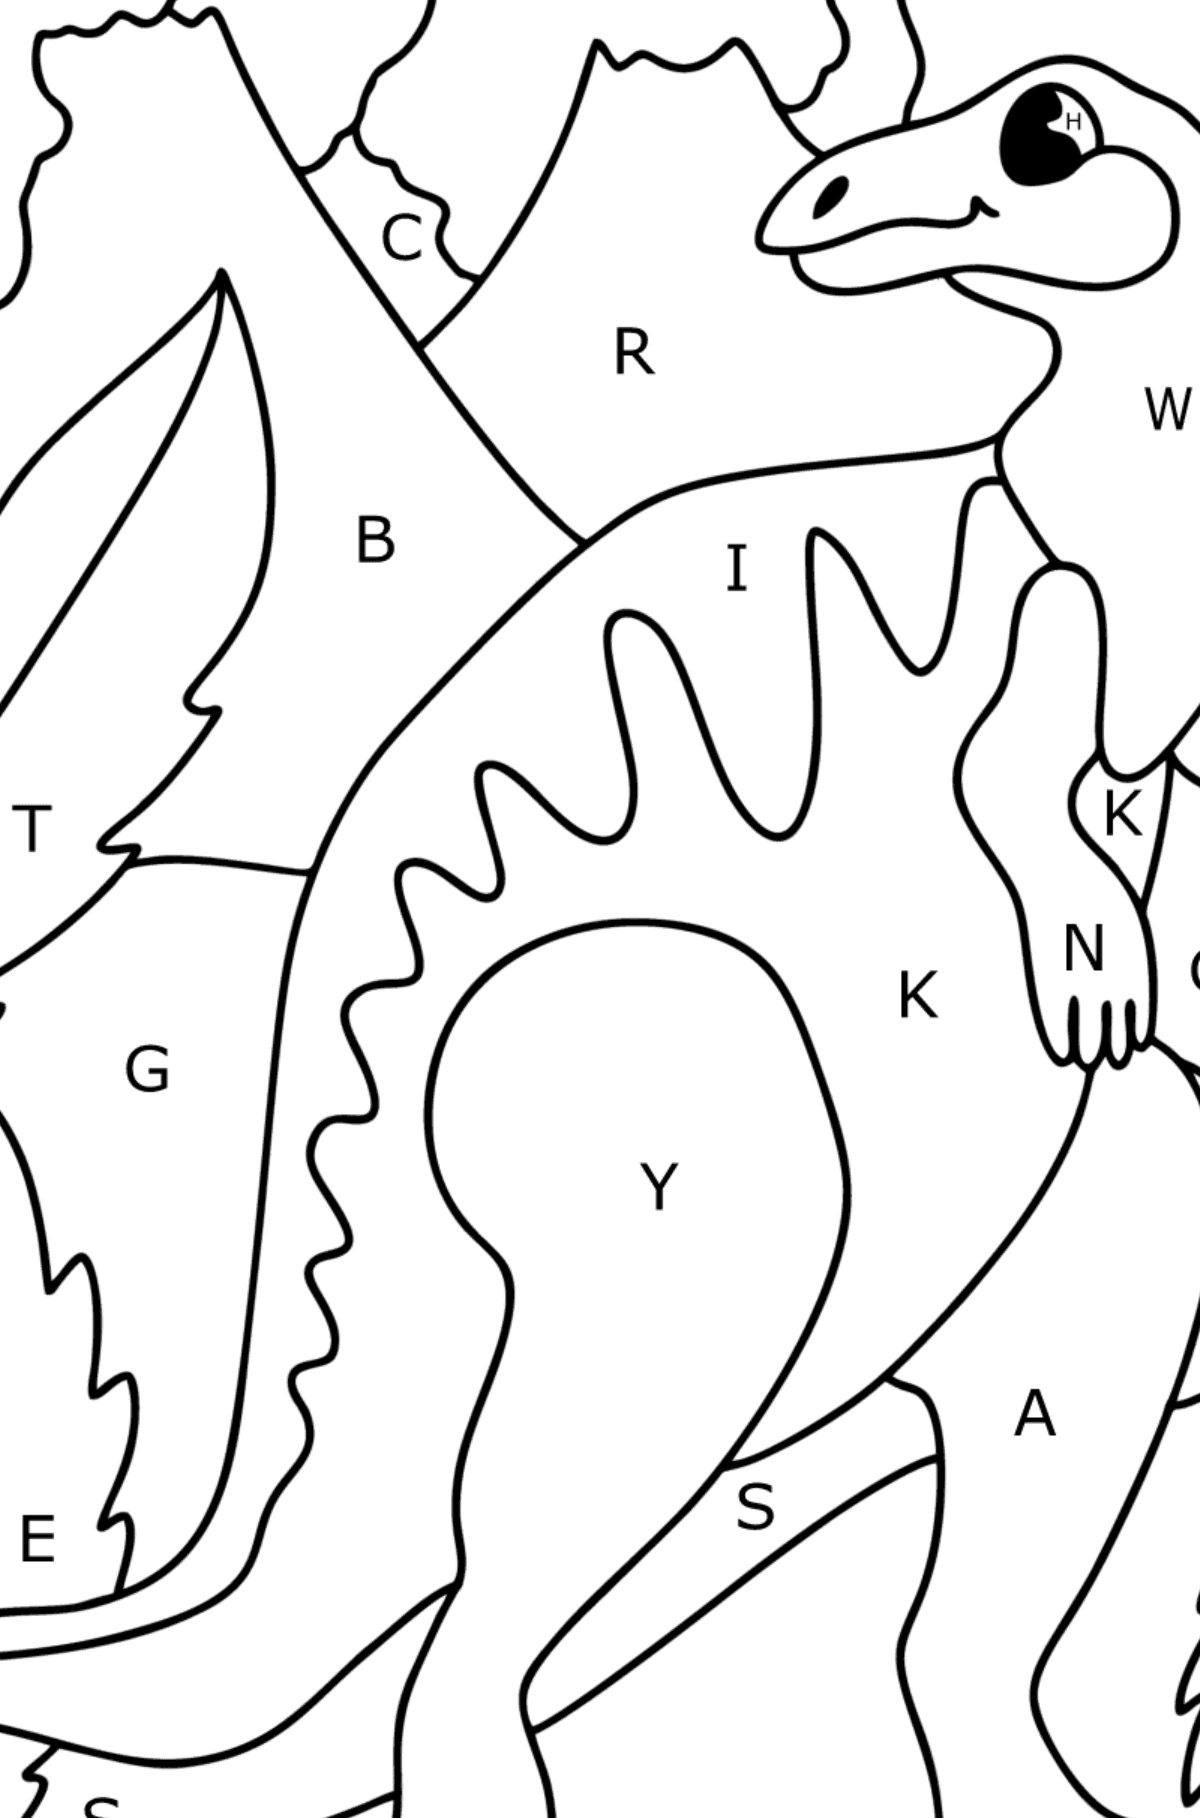 Coloriage hadrosaure - Coloriage par Lettres pour les Enfants